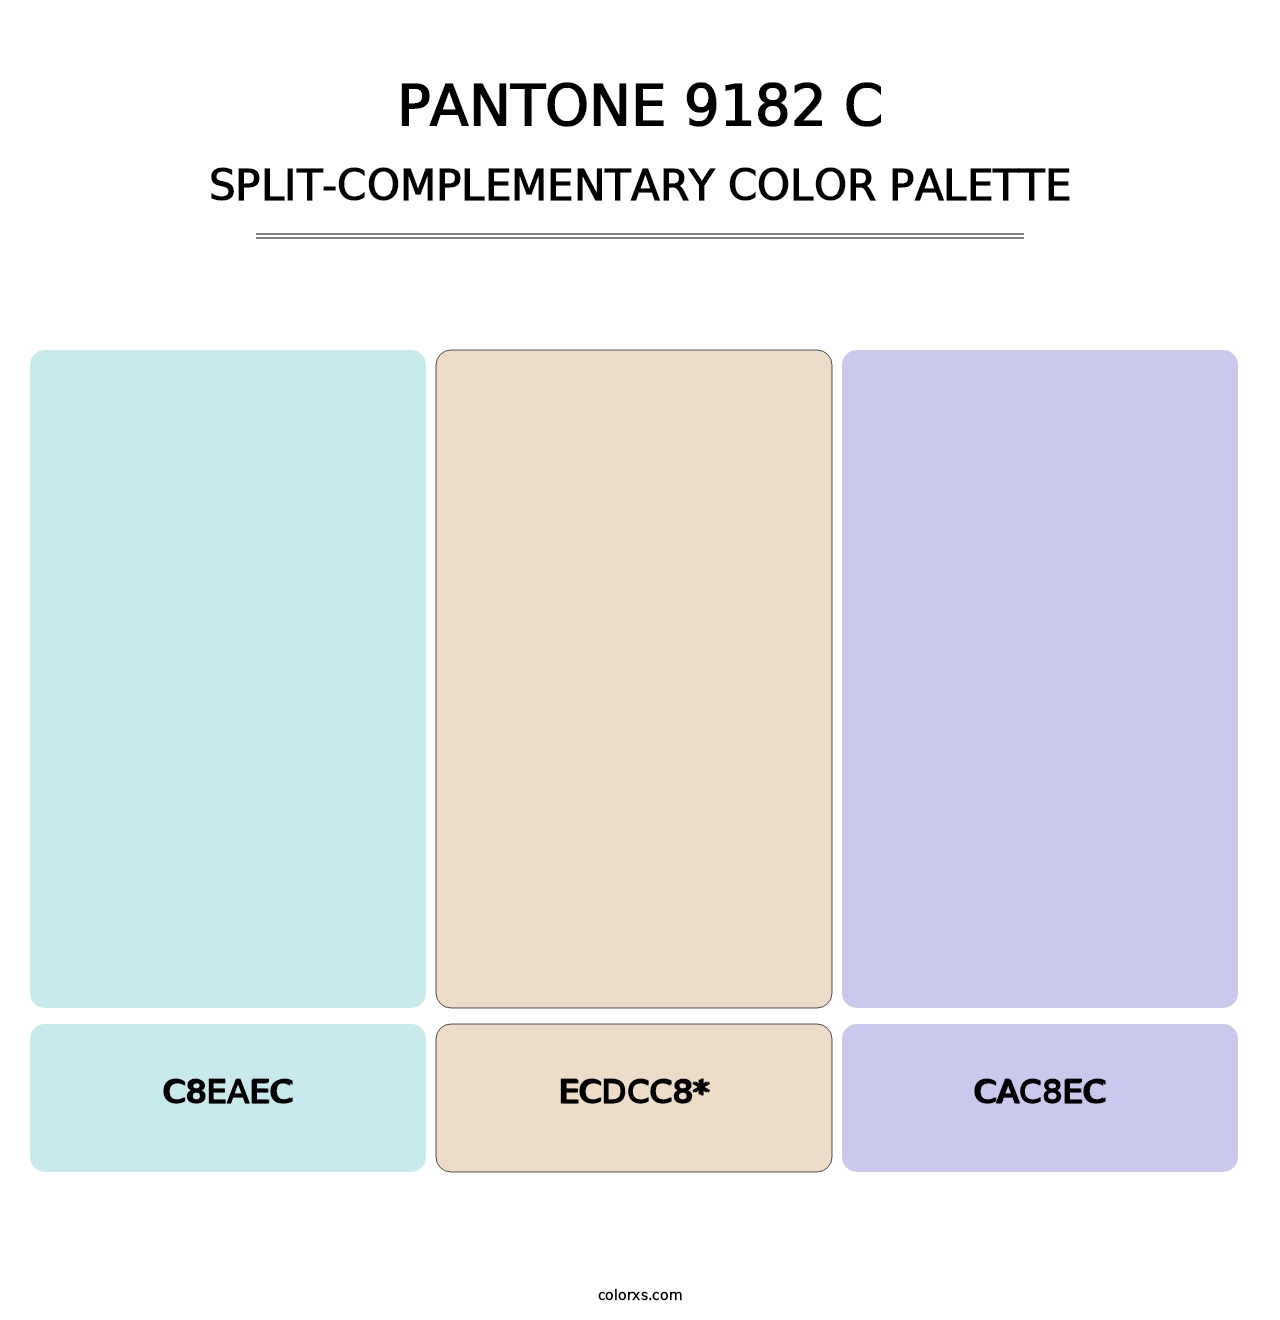 PANTONE 9182 C - Split-Complementary Color Palette